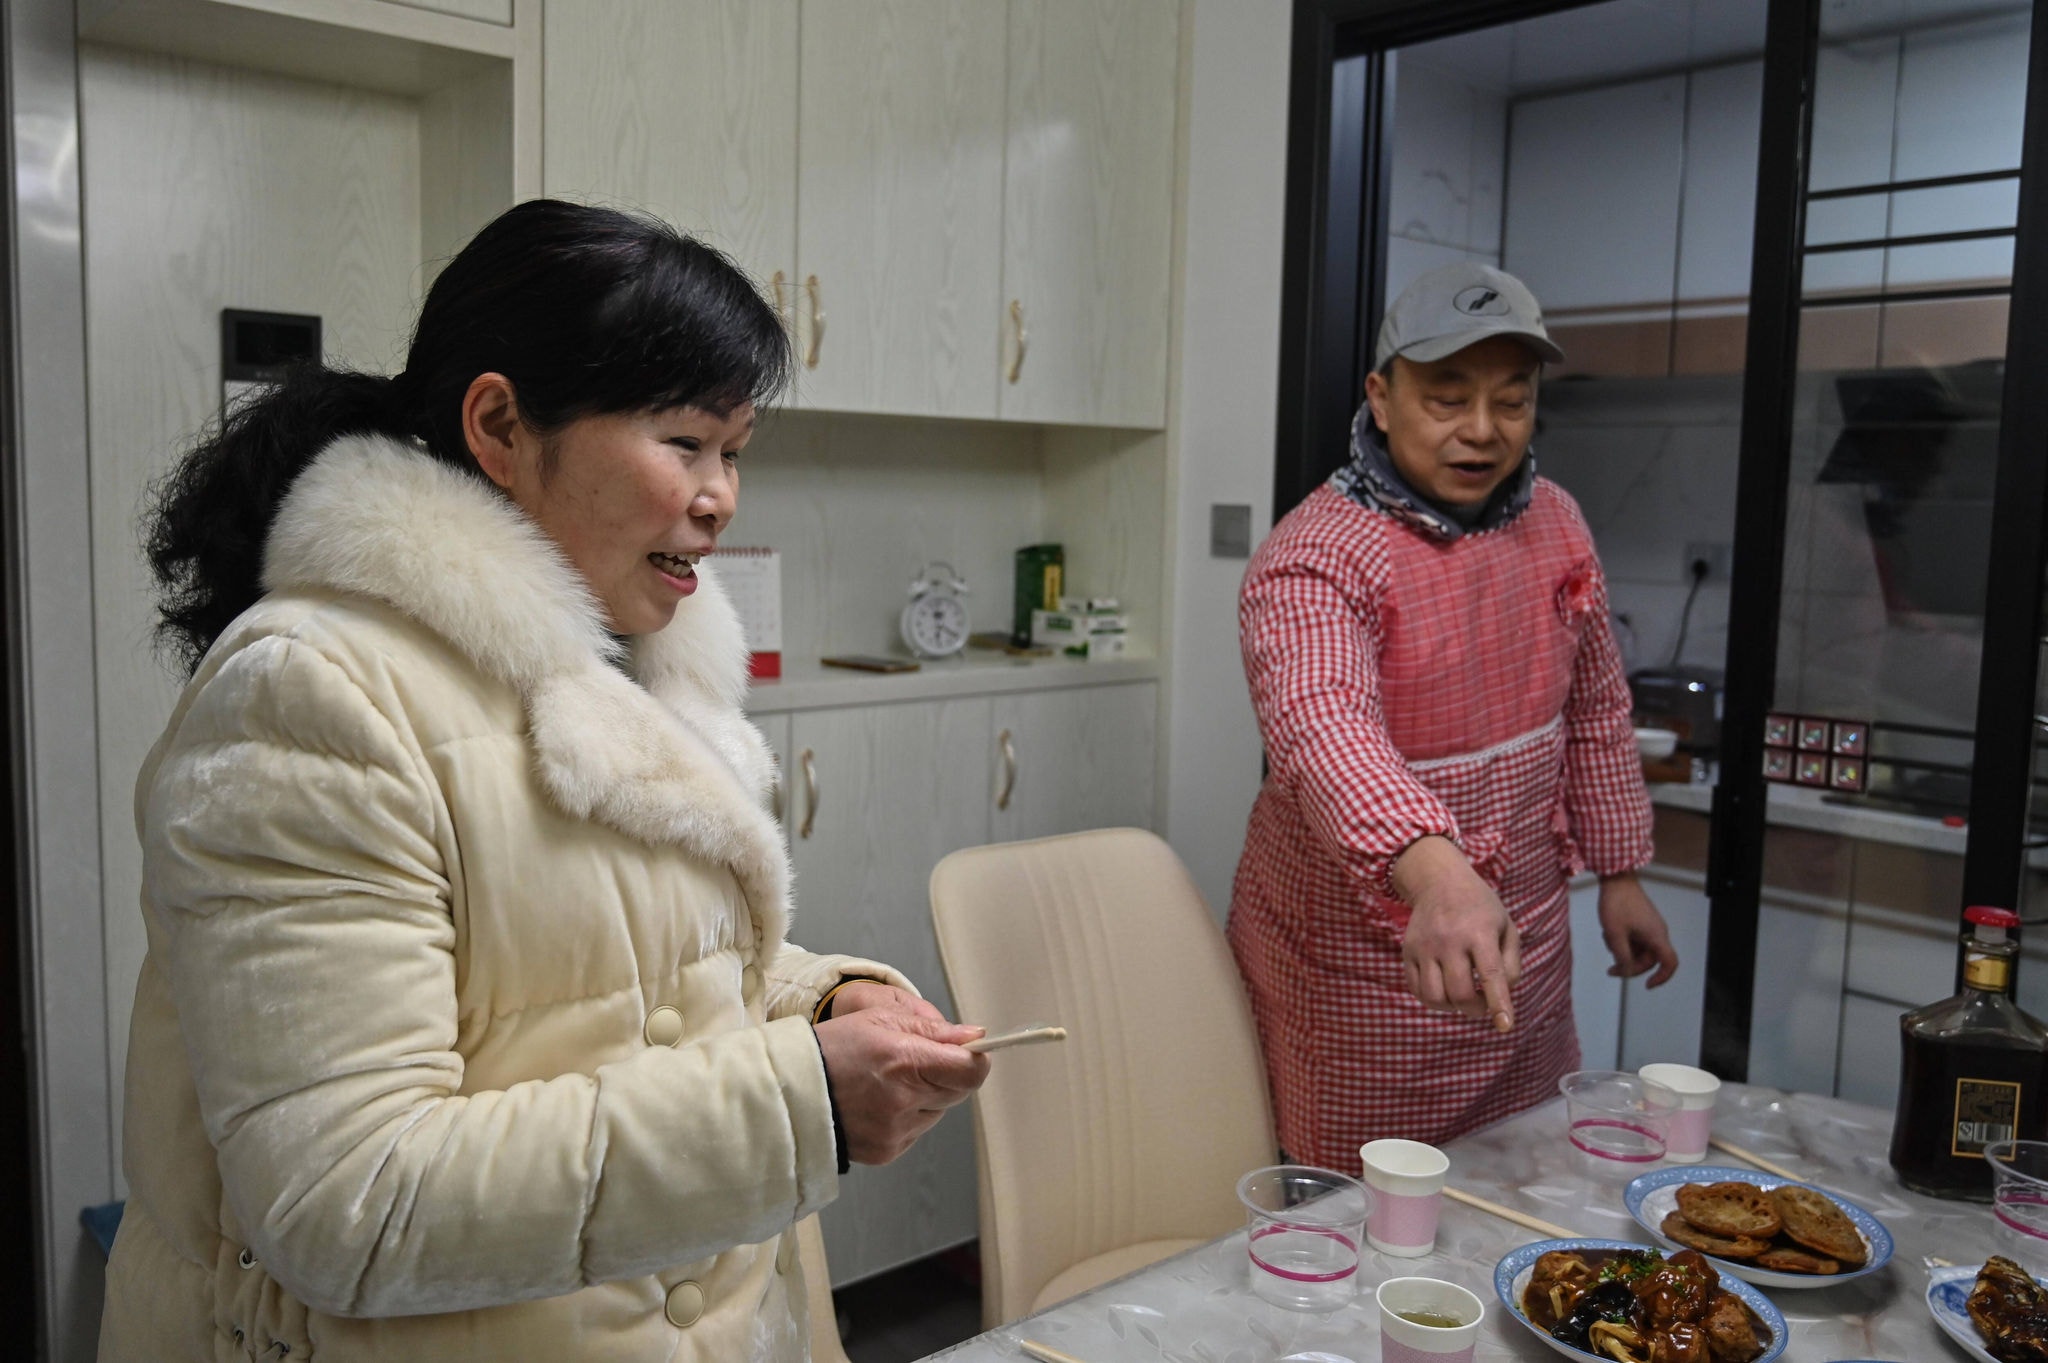 Morador de Wuhan, Pen Lixing prepara o jantar com sua esposa Wang Yangong para celebrar o ano novo chinês em casa